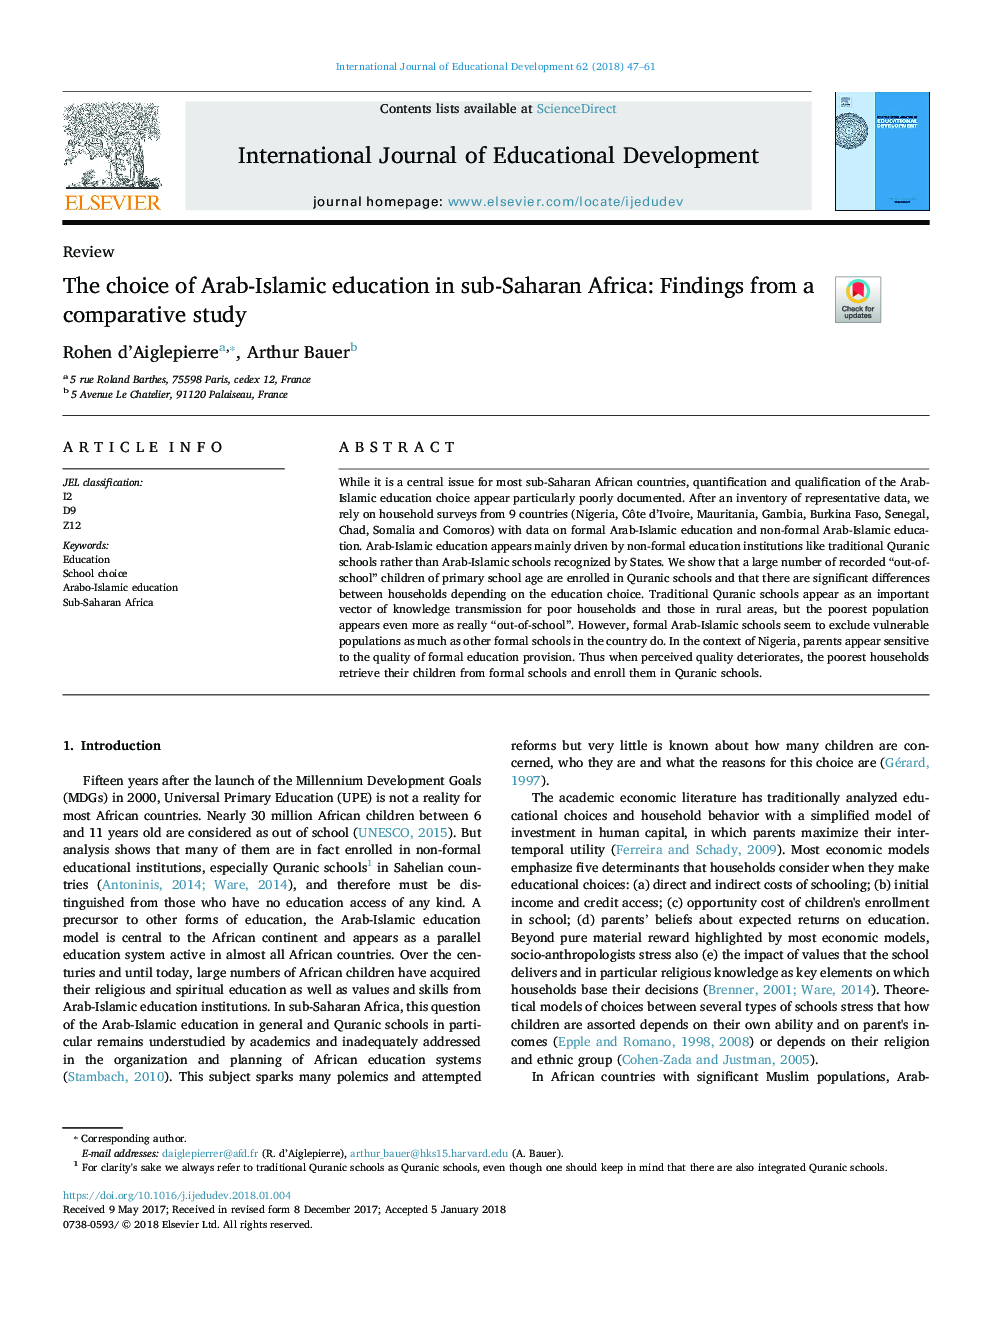 انتخاب آموزش و پرورش عرب اسلامی در کشورهای جنوب صحرای آفریقا: یافته های یک مطالعه مقایسه ای 